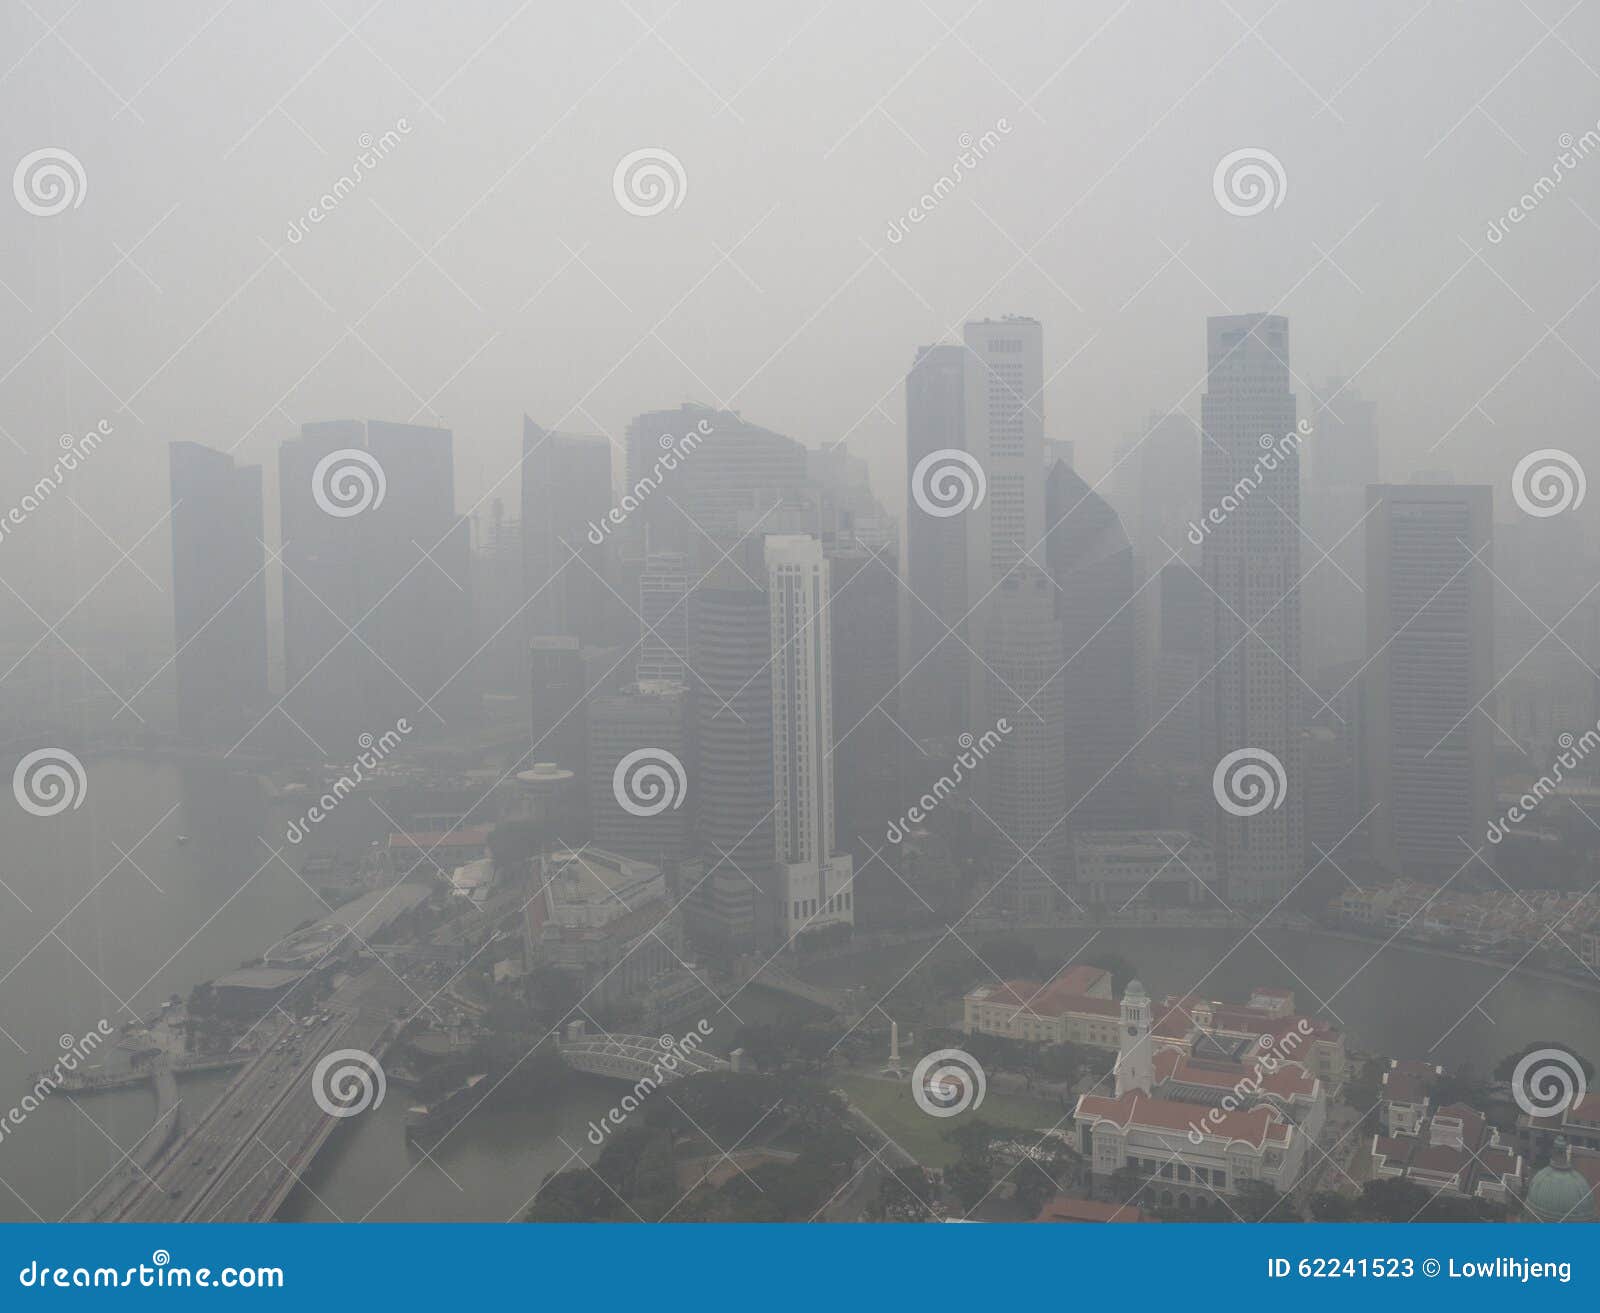 haze over singapore